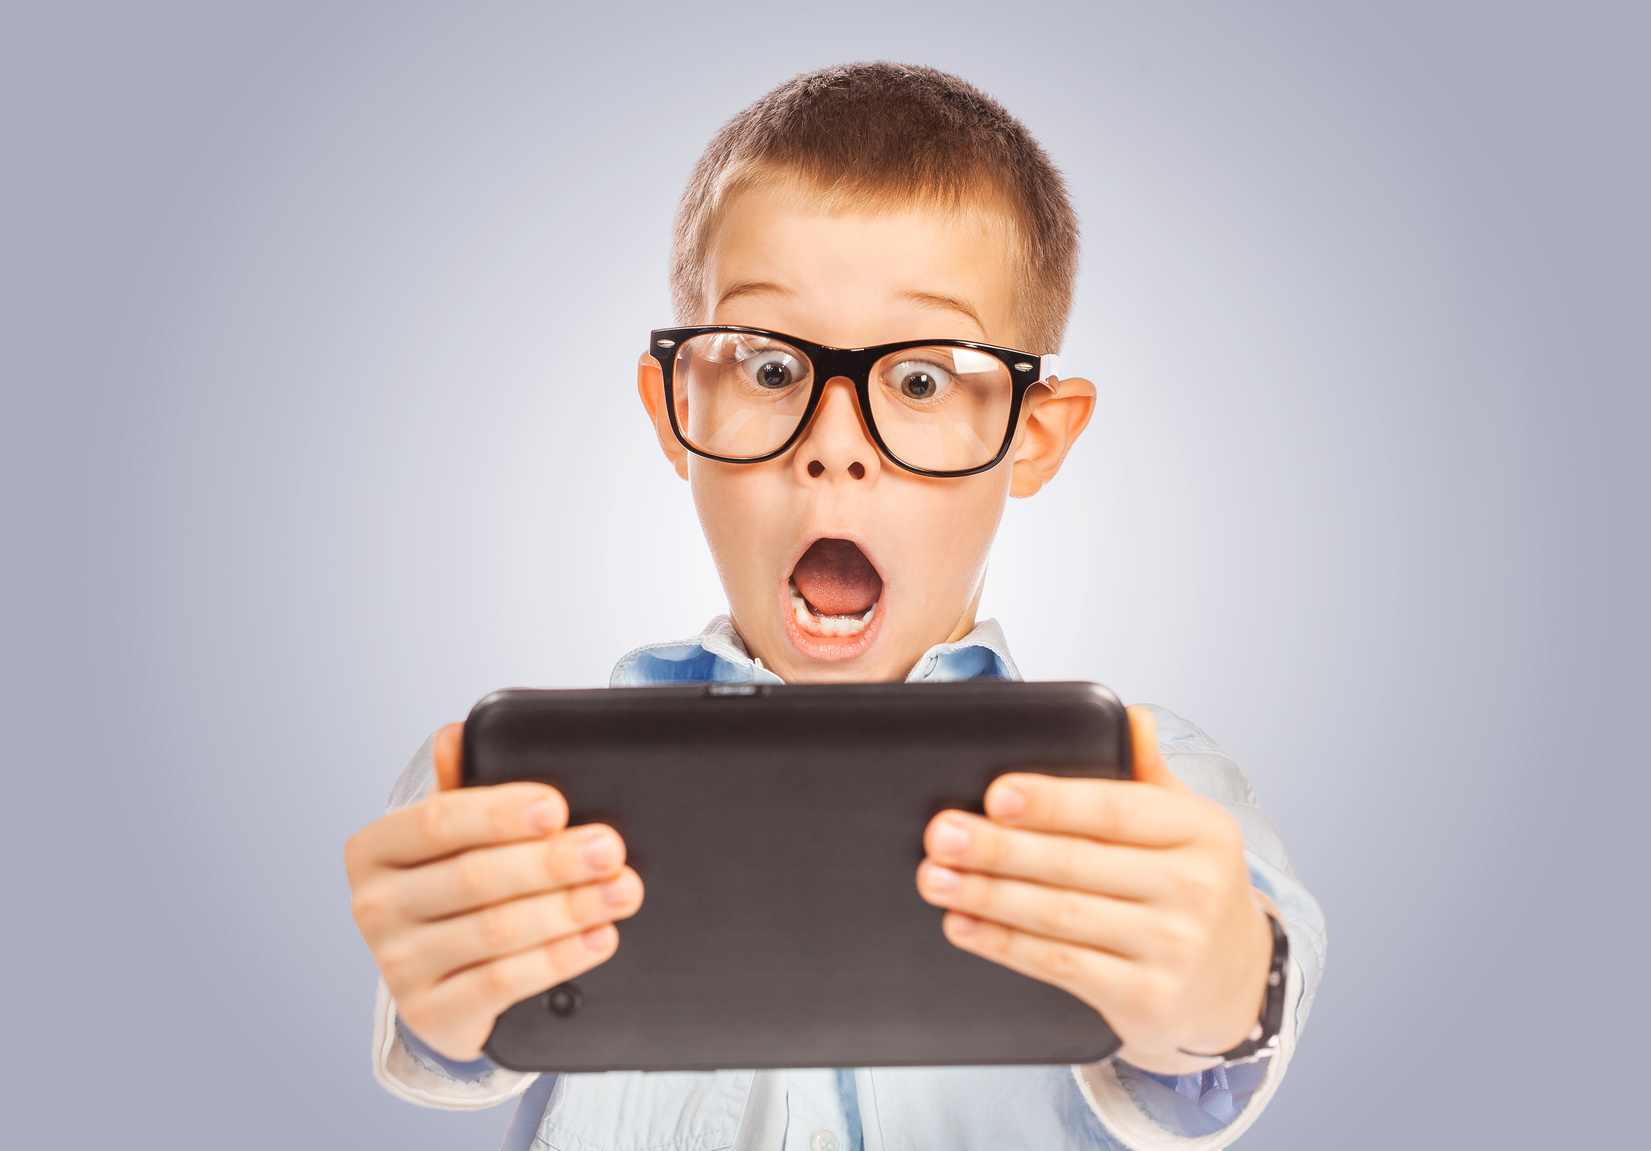 Влияние планшета на ребенка: 10 причин сказать планшету «нет»